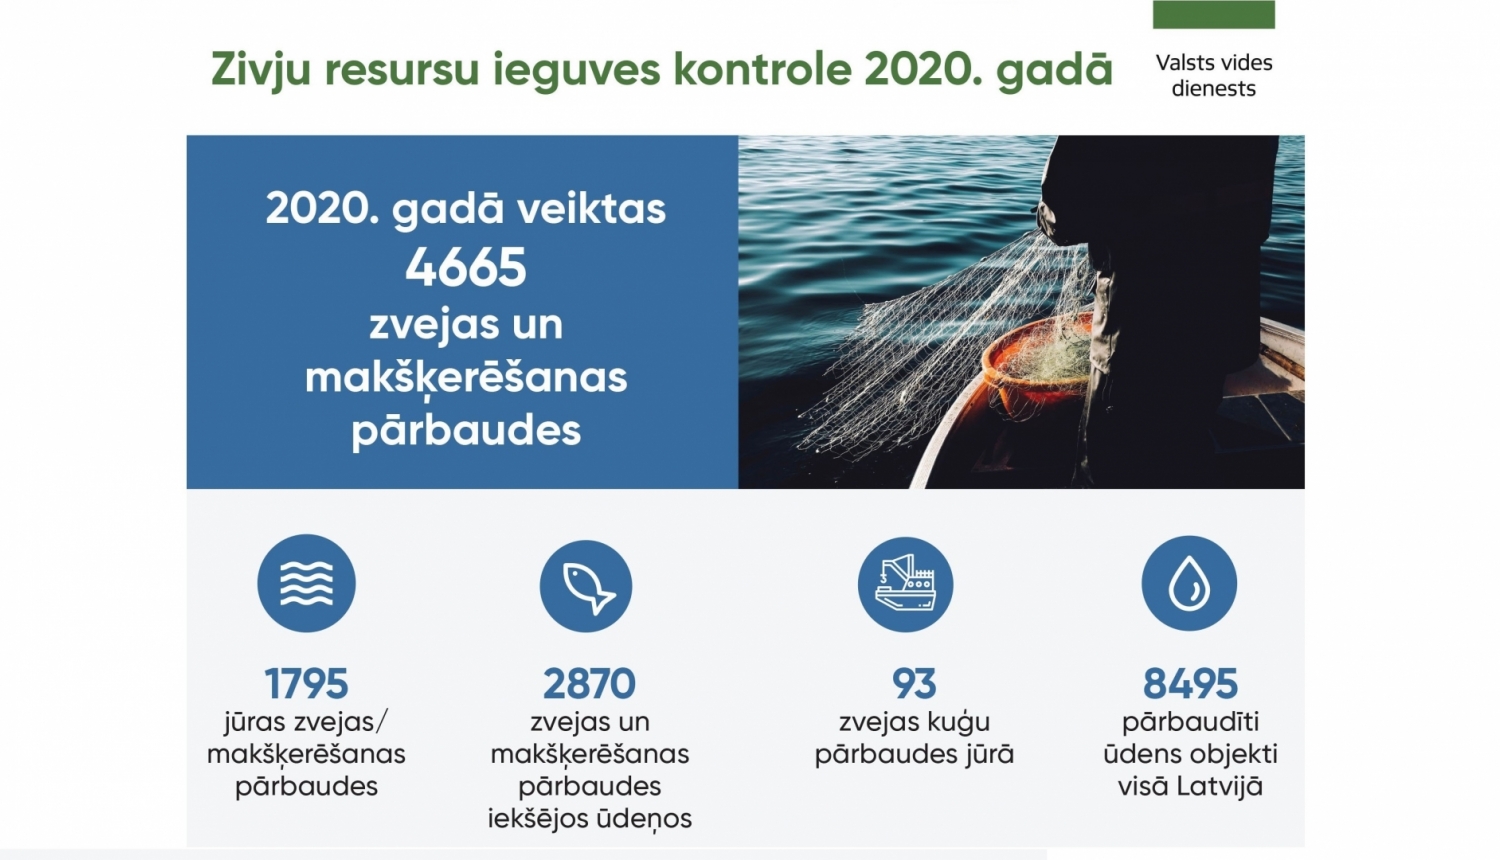 Zivju resursu ieguves kontrole 2020